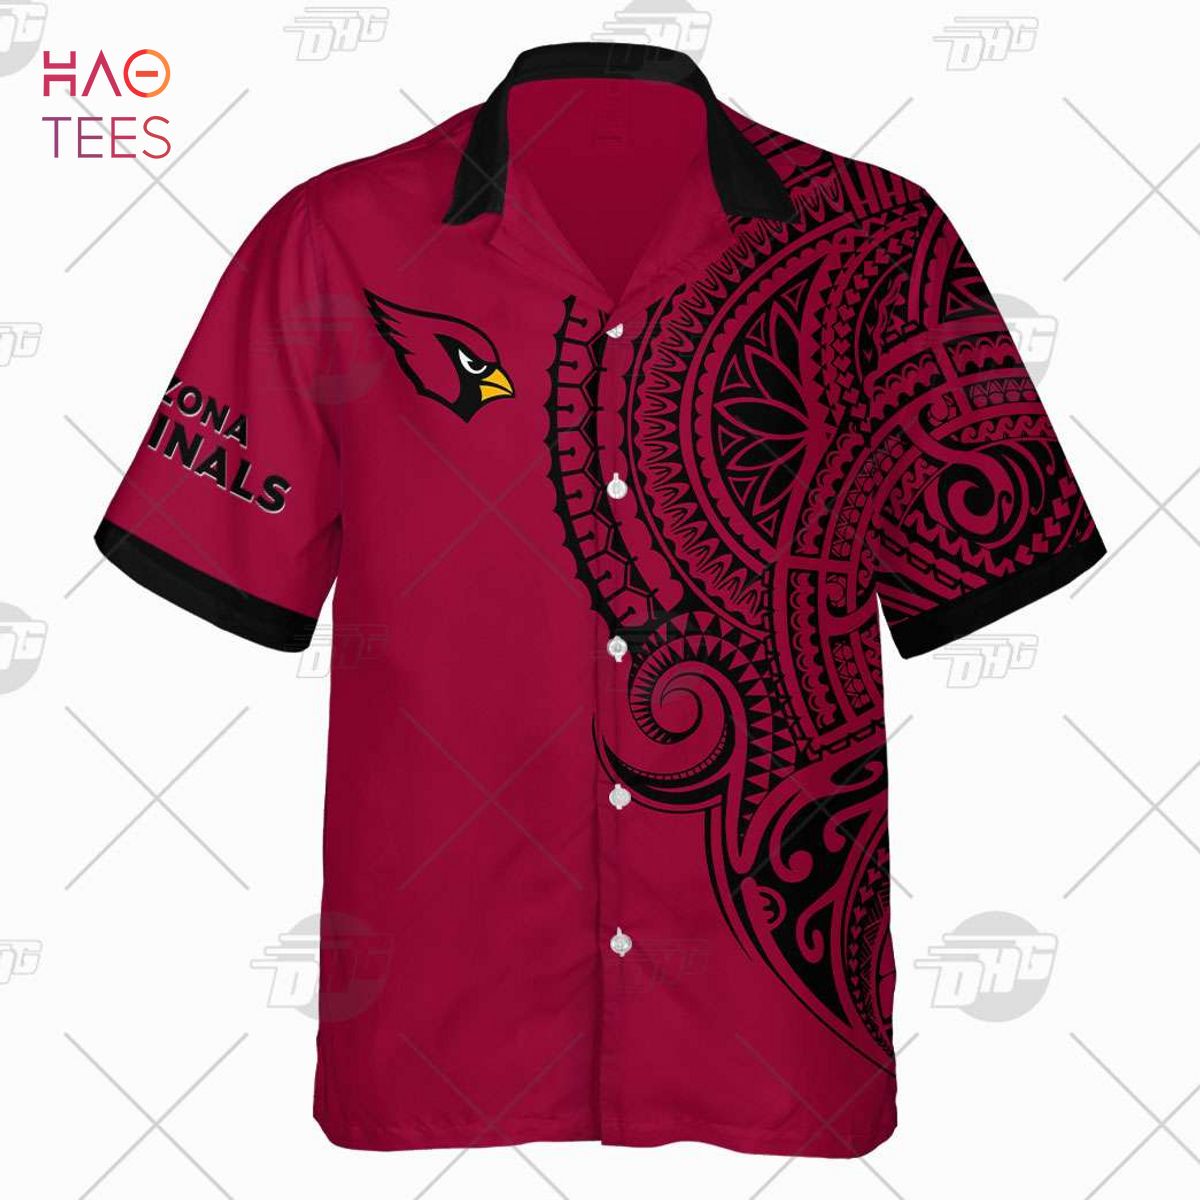 Personalized Arizona Cardinals Mascot NFL Baseball Jersey - T-shirts Low  Price